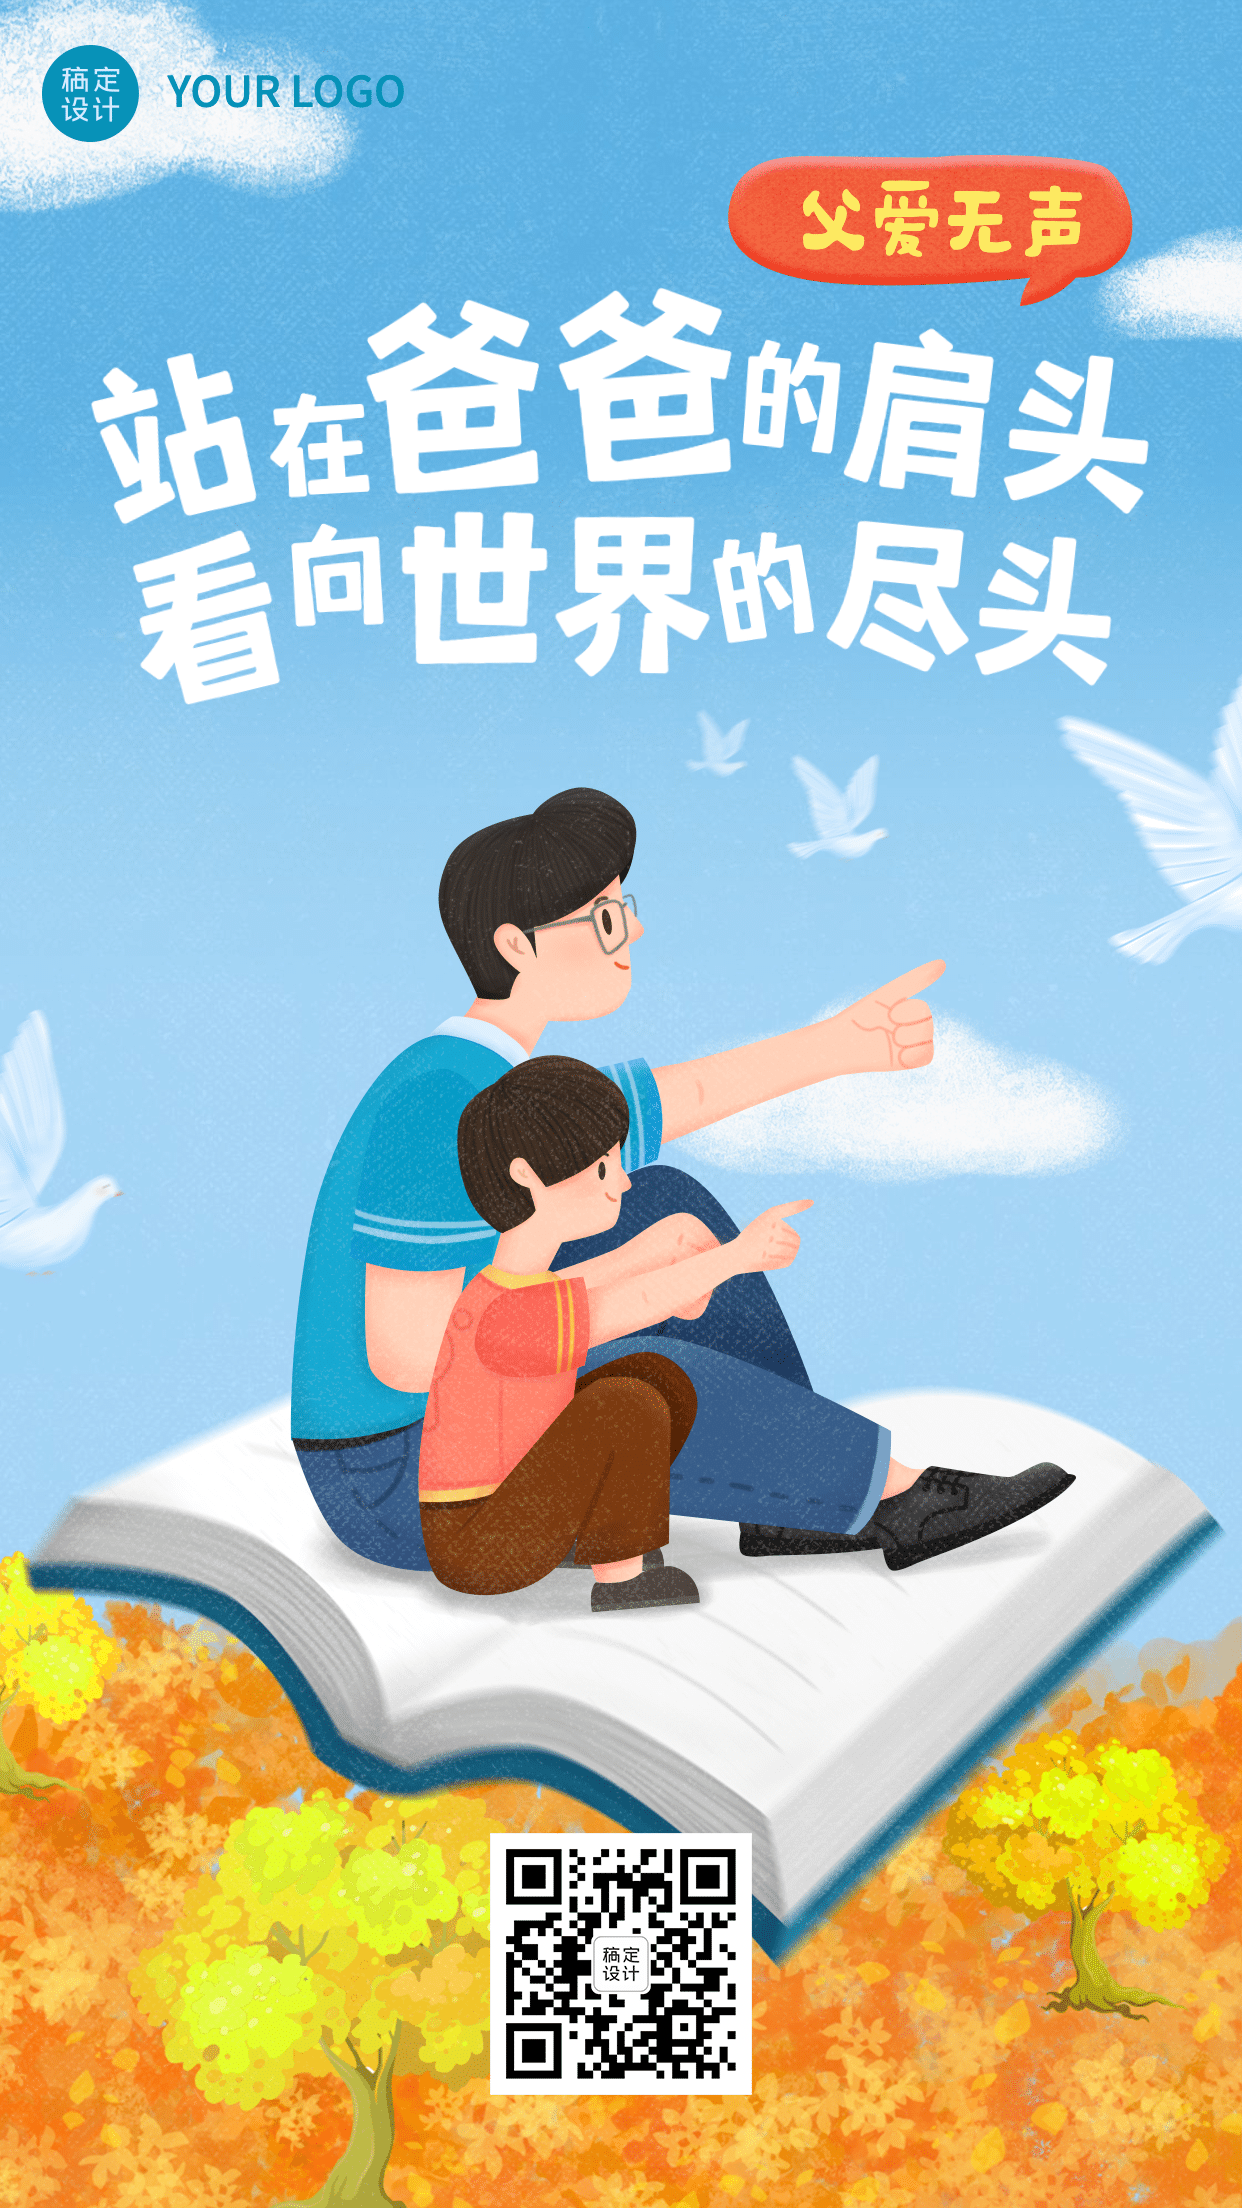 父亲节祝福温情营销插画手机海报预览效果